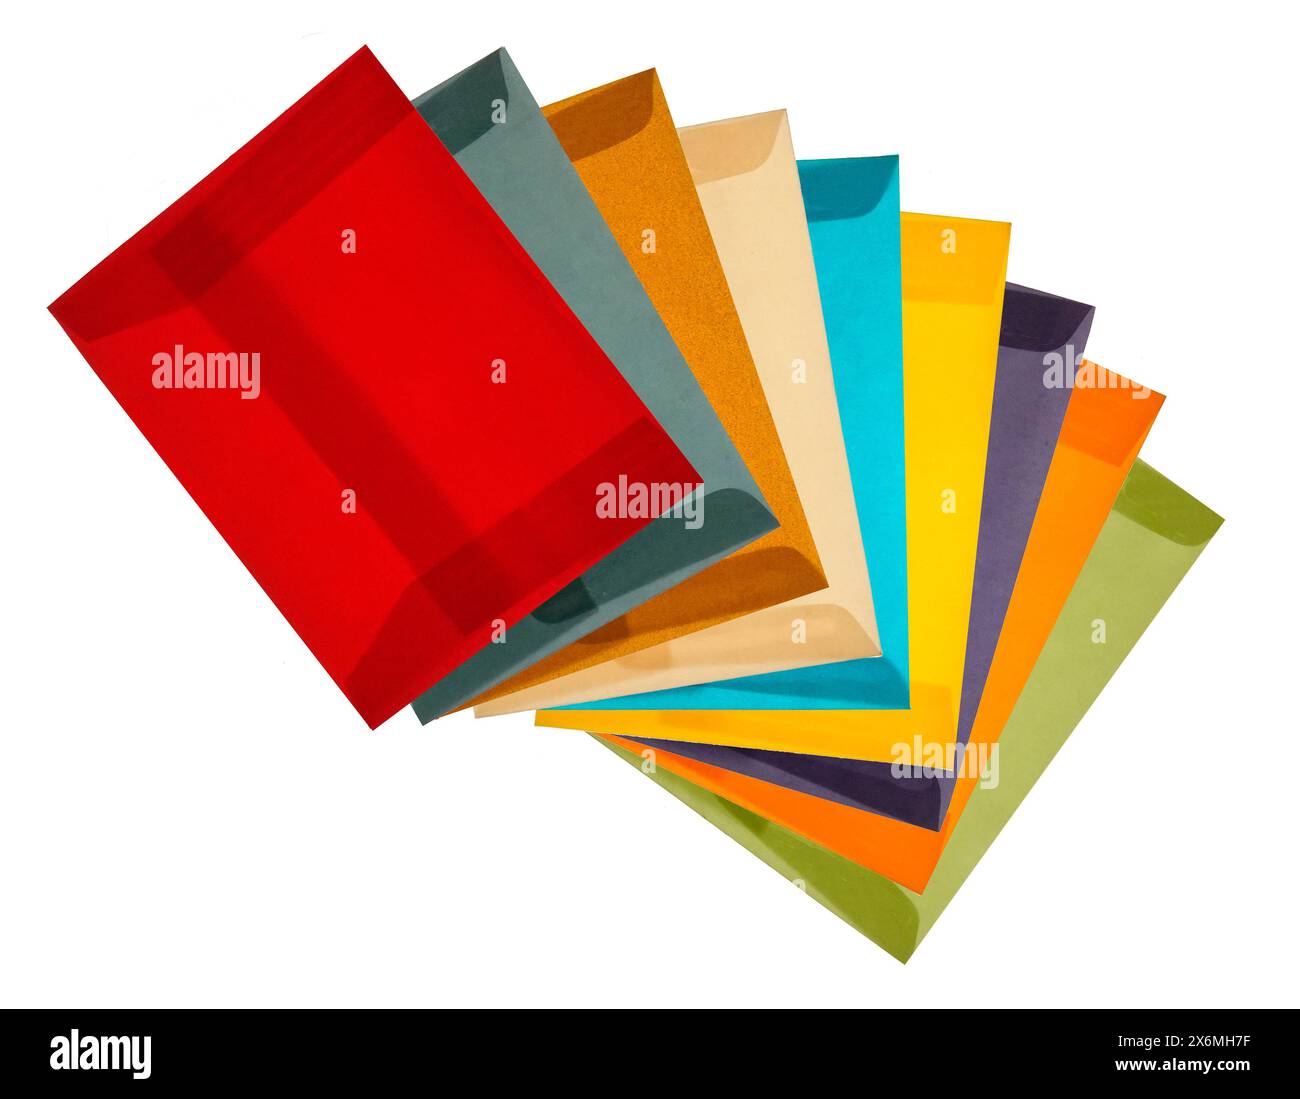 Un arrangement de nature morte d'enveloppes de vélin vibrantes de différentes couleurs comme le rouge, le bleu, le jaune, le vert et le violet soigneusement disposés sur un dos blanc propre Banque D'Images